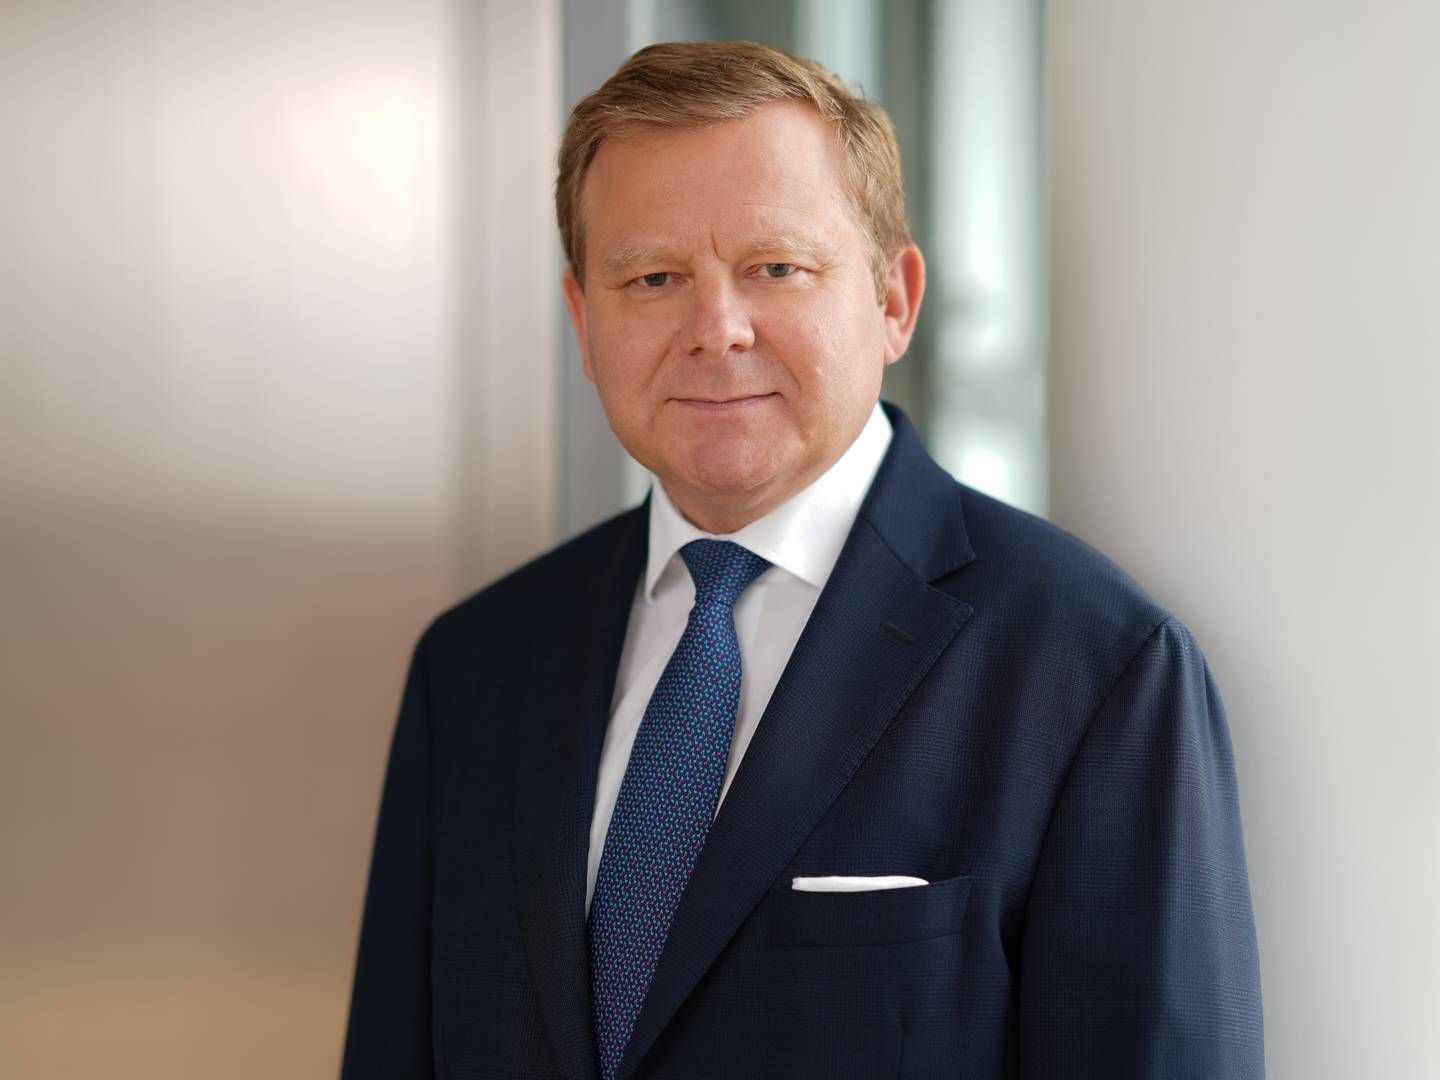 Sascha Klaus ist bereits seit 1. Oktober 2016 Vorstandsvorsitzender der Berlin Hyp. | Foto: Berlin Hyp